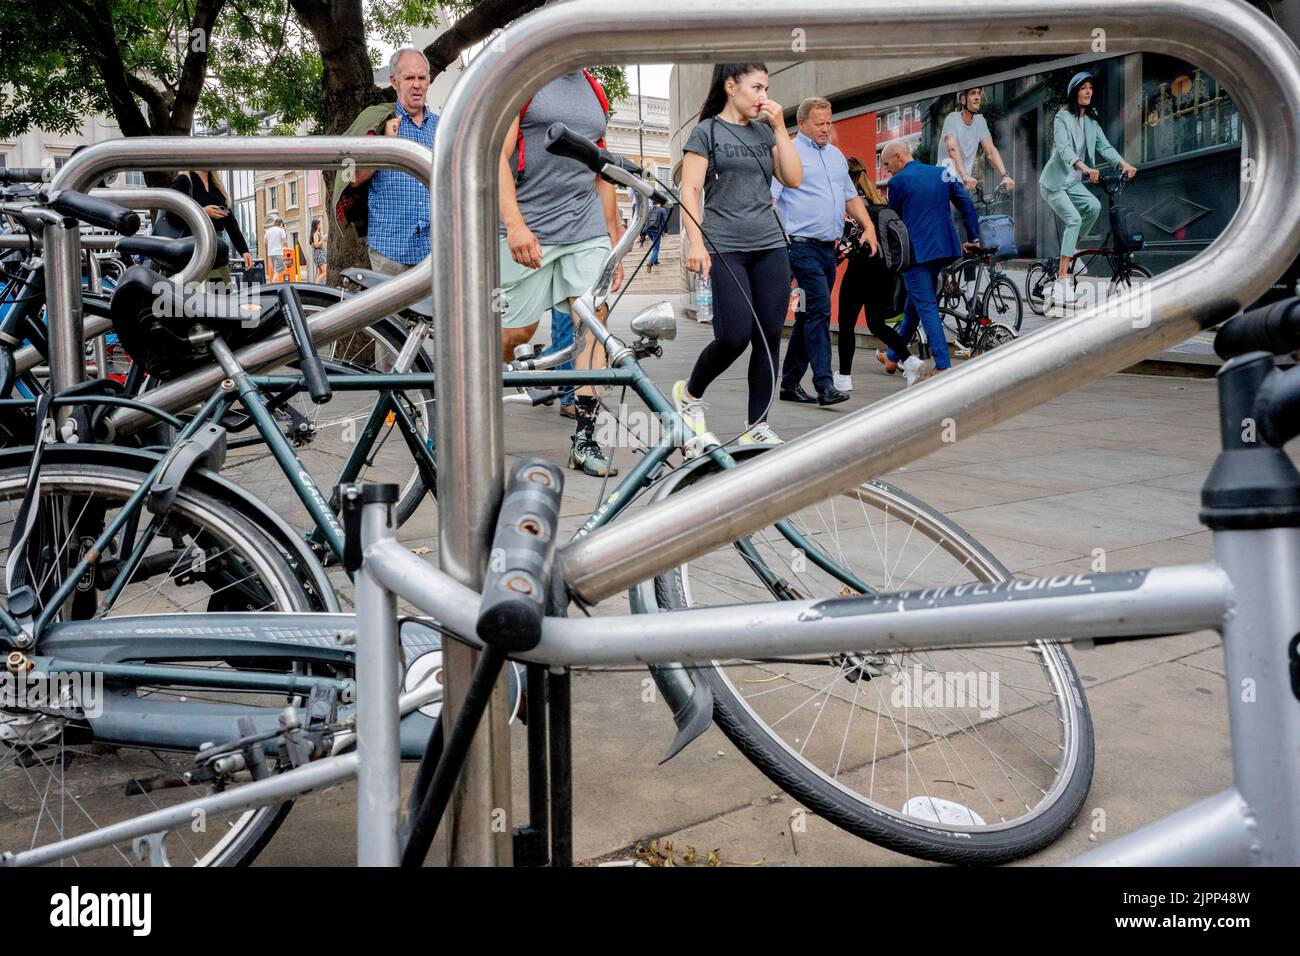 Am 17.. August 2022 in London, England, werden vor einer Plakatwand vor dem Evans Cycles-Händler an der London Bridge Schlösser und ein Chaos verschlossener Fahrräder gesehen. London gilt mit durchschnittlich 390 Diebstählen pro 100.000 Einwohner als die schlimmste Region in England und Wales. Stockfoto